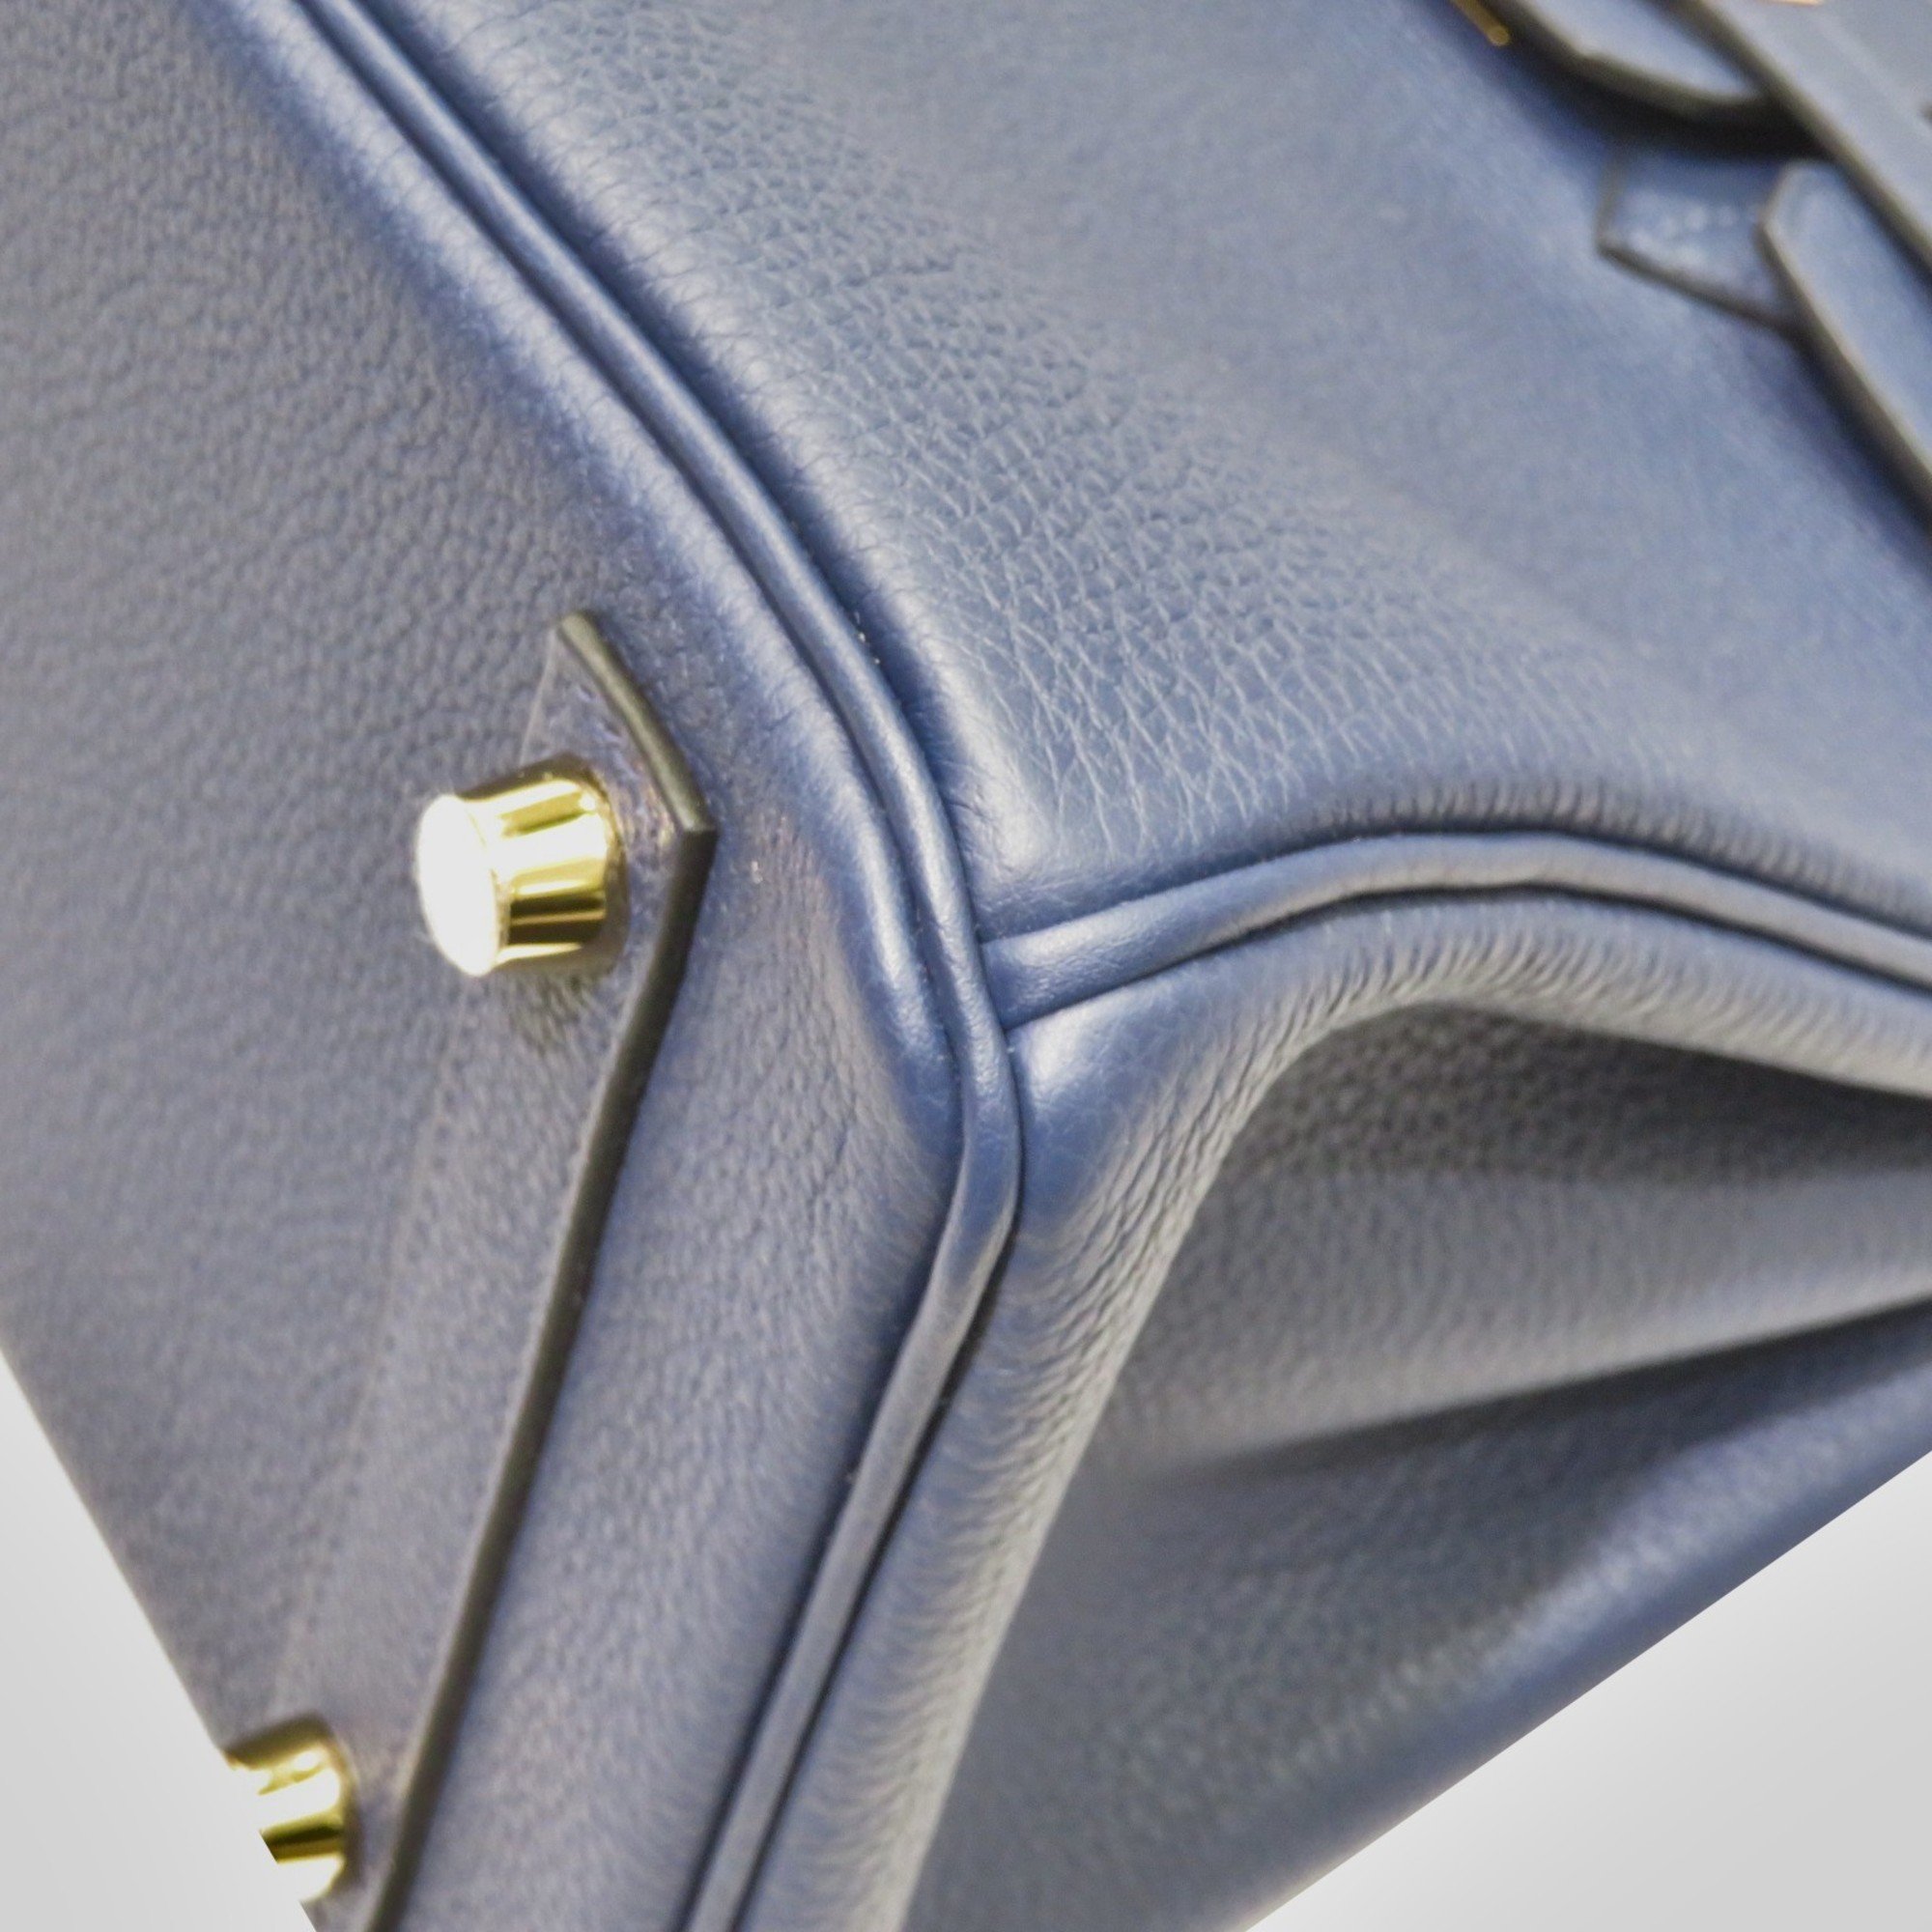 HERMES Hermes Birkin 25 Handbag Blue Navy G Hardware Togo W Engraved Women's Men's Leather